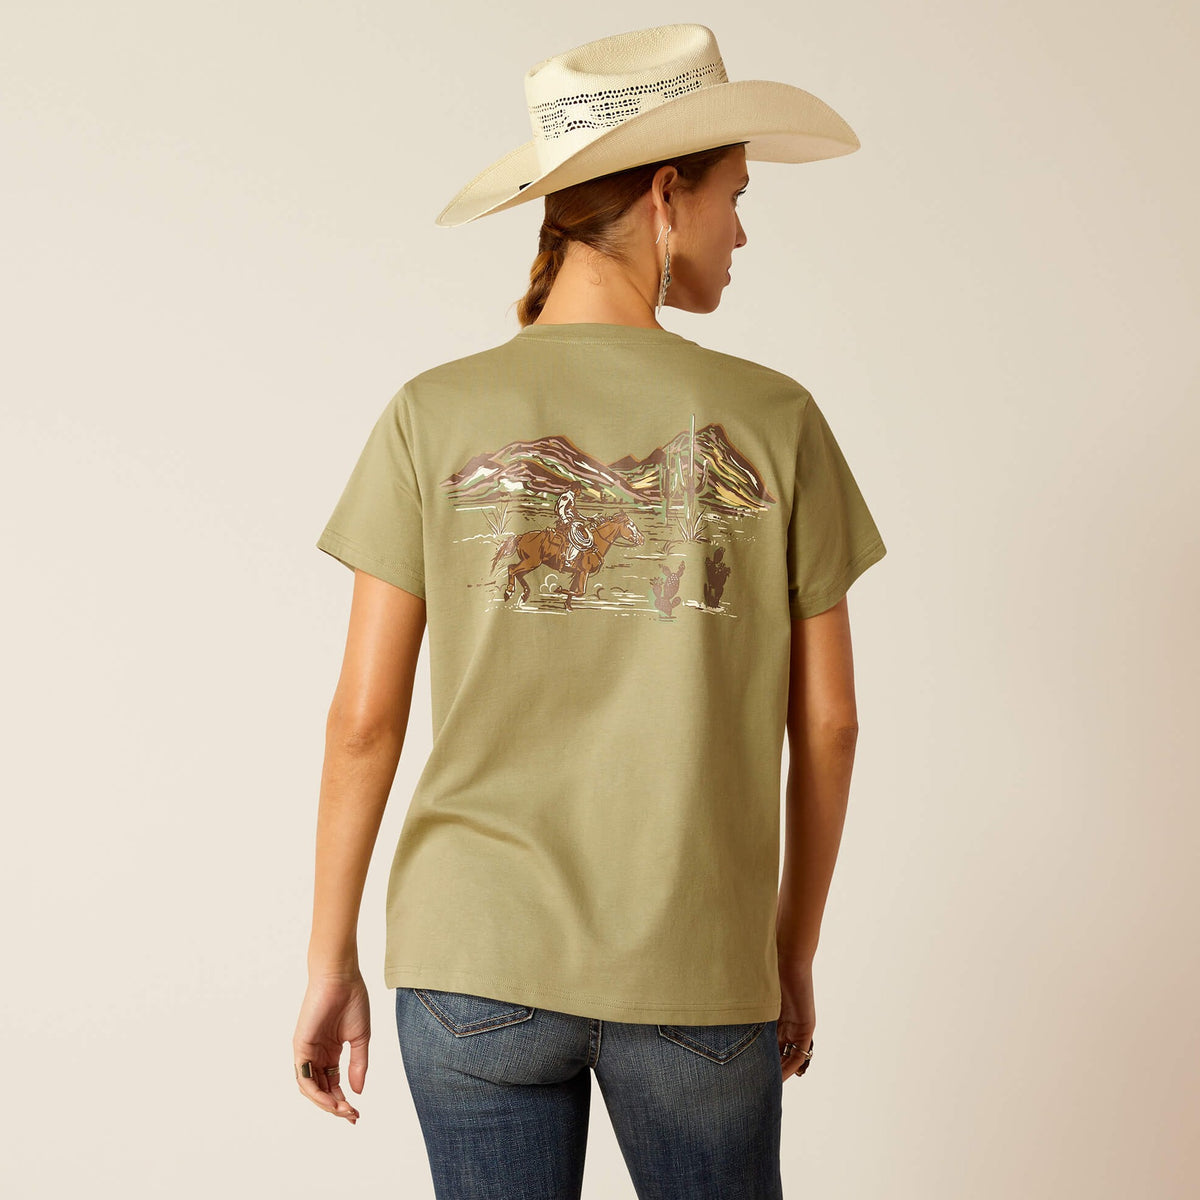 Ariat Women's Desert Scene T-Shirt in Oil Green (Available in Plus Sizes)